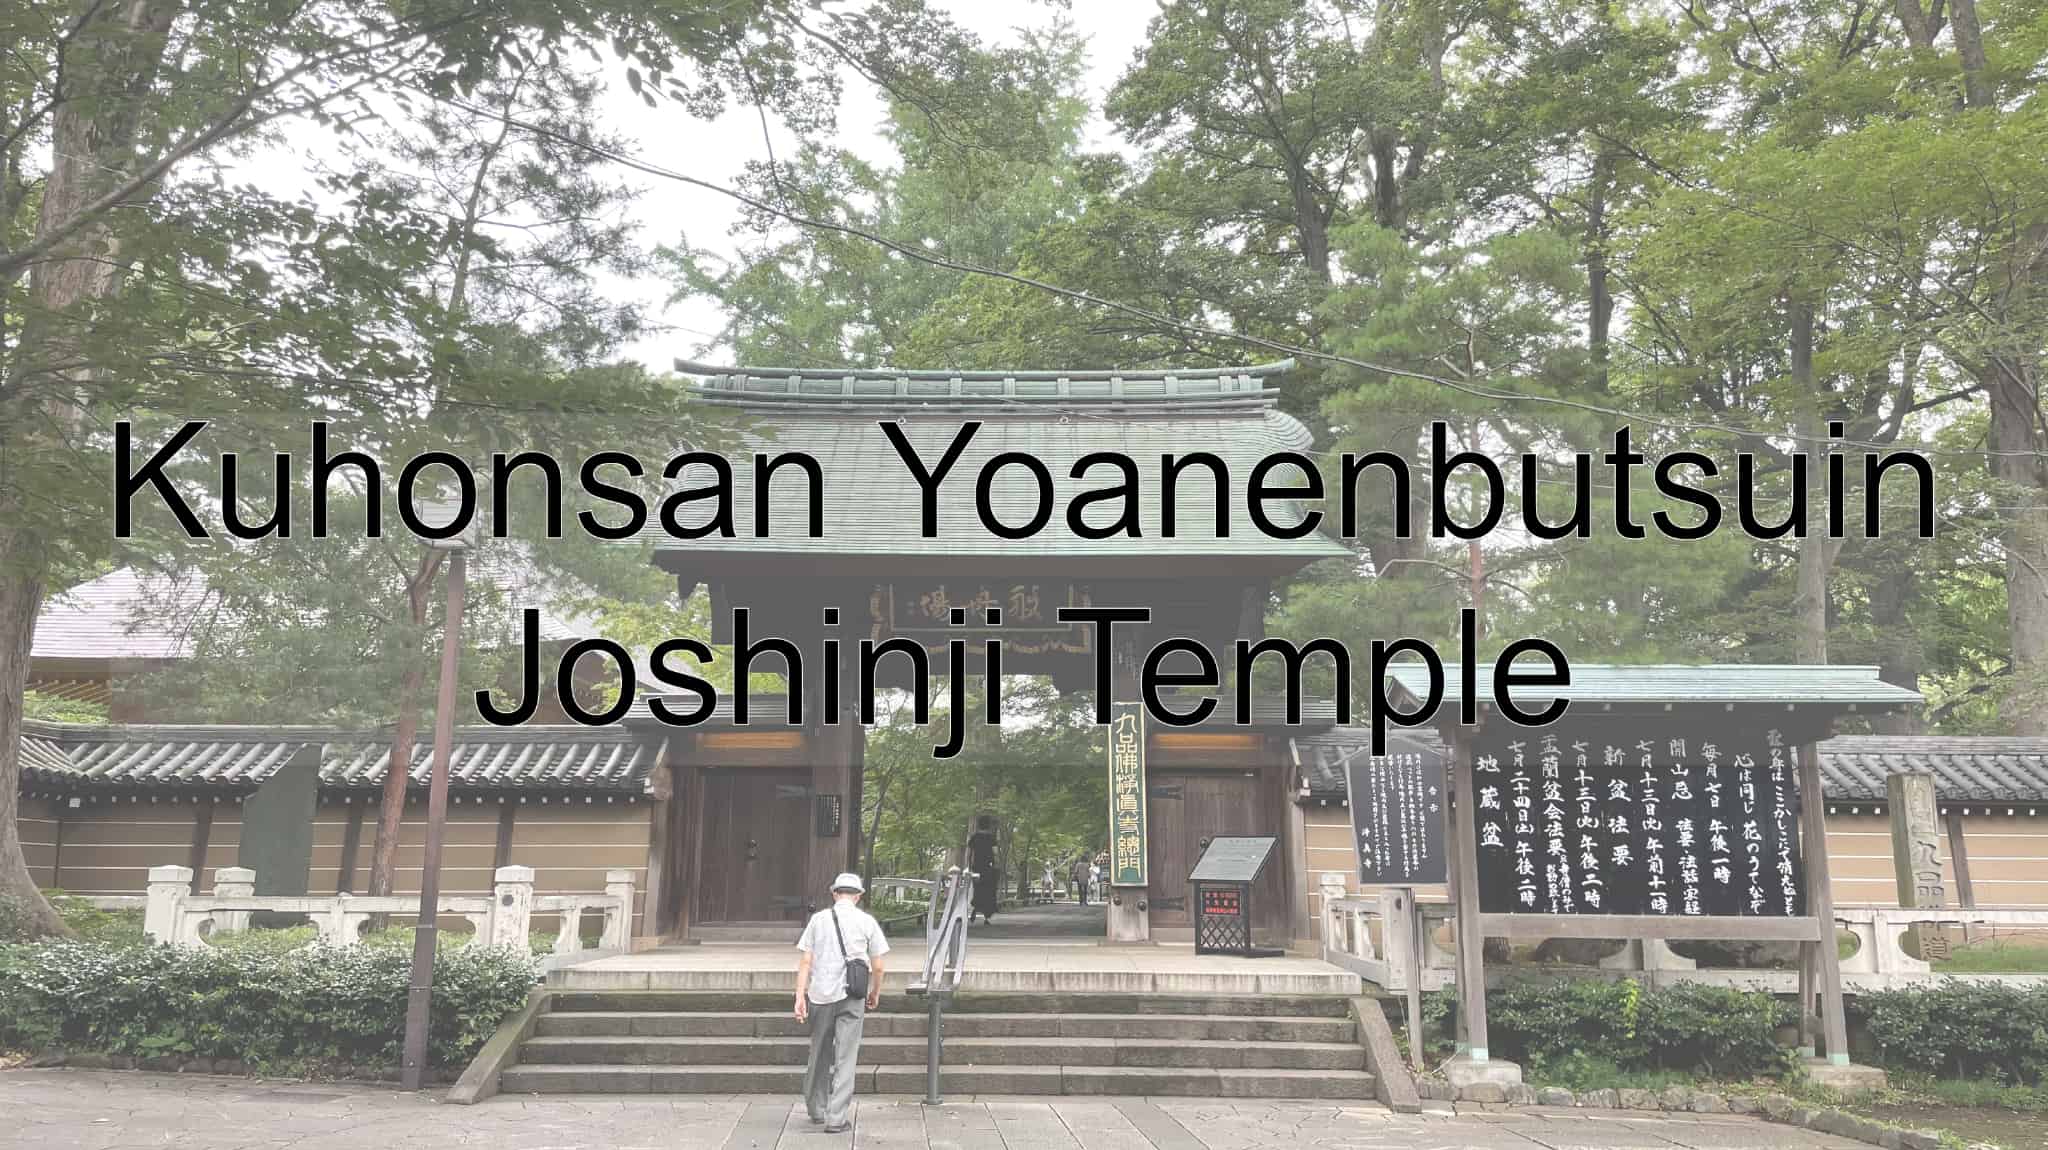 Kuhonsan Yoanenbutsuin Joshinji Temple, Joshinji Temple, Temple, Buddhist, Tokyo, Tokyo Metropolis, Japan